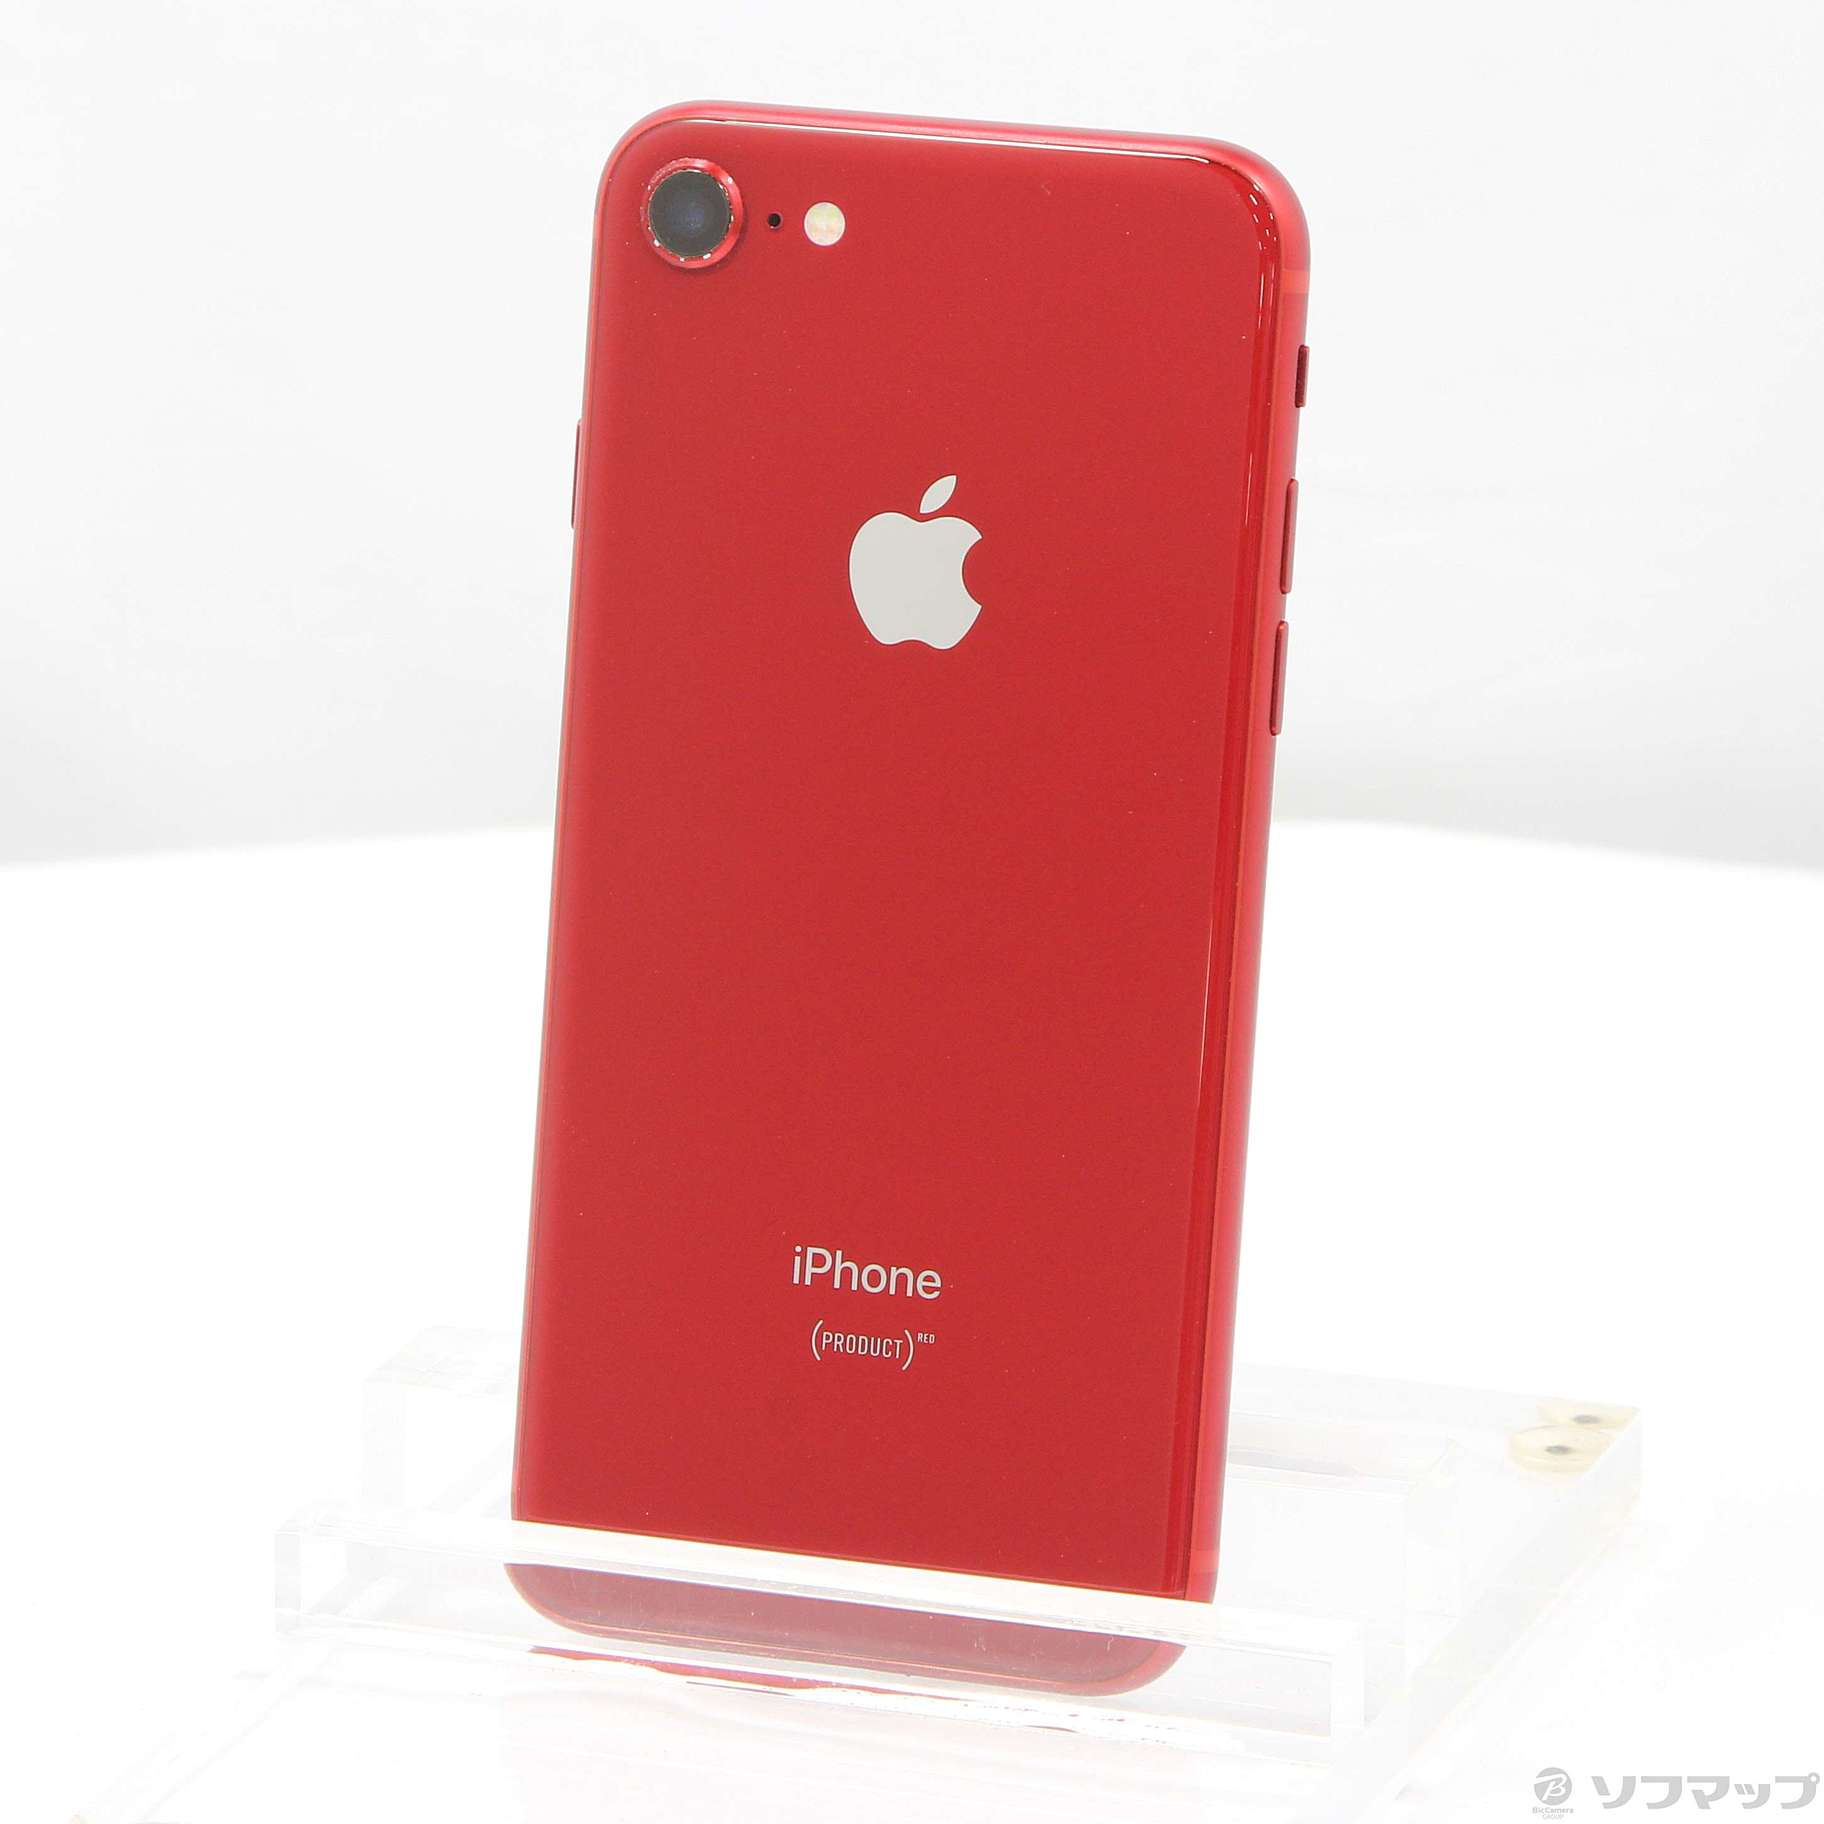 スマートフォン/携帯電話Apple iPhone8 PRODUCT RED SIMフリー